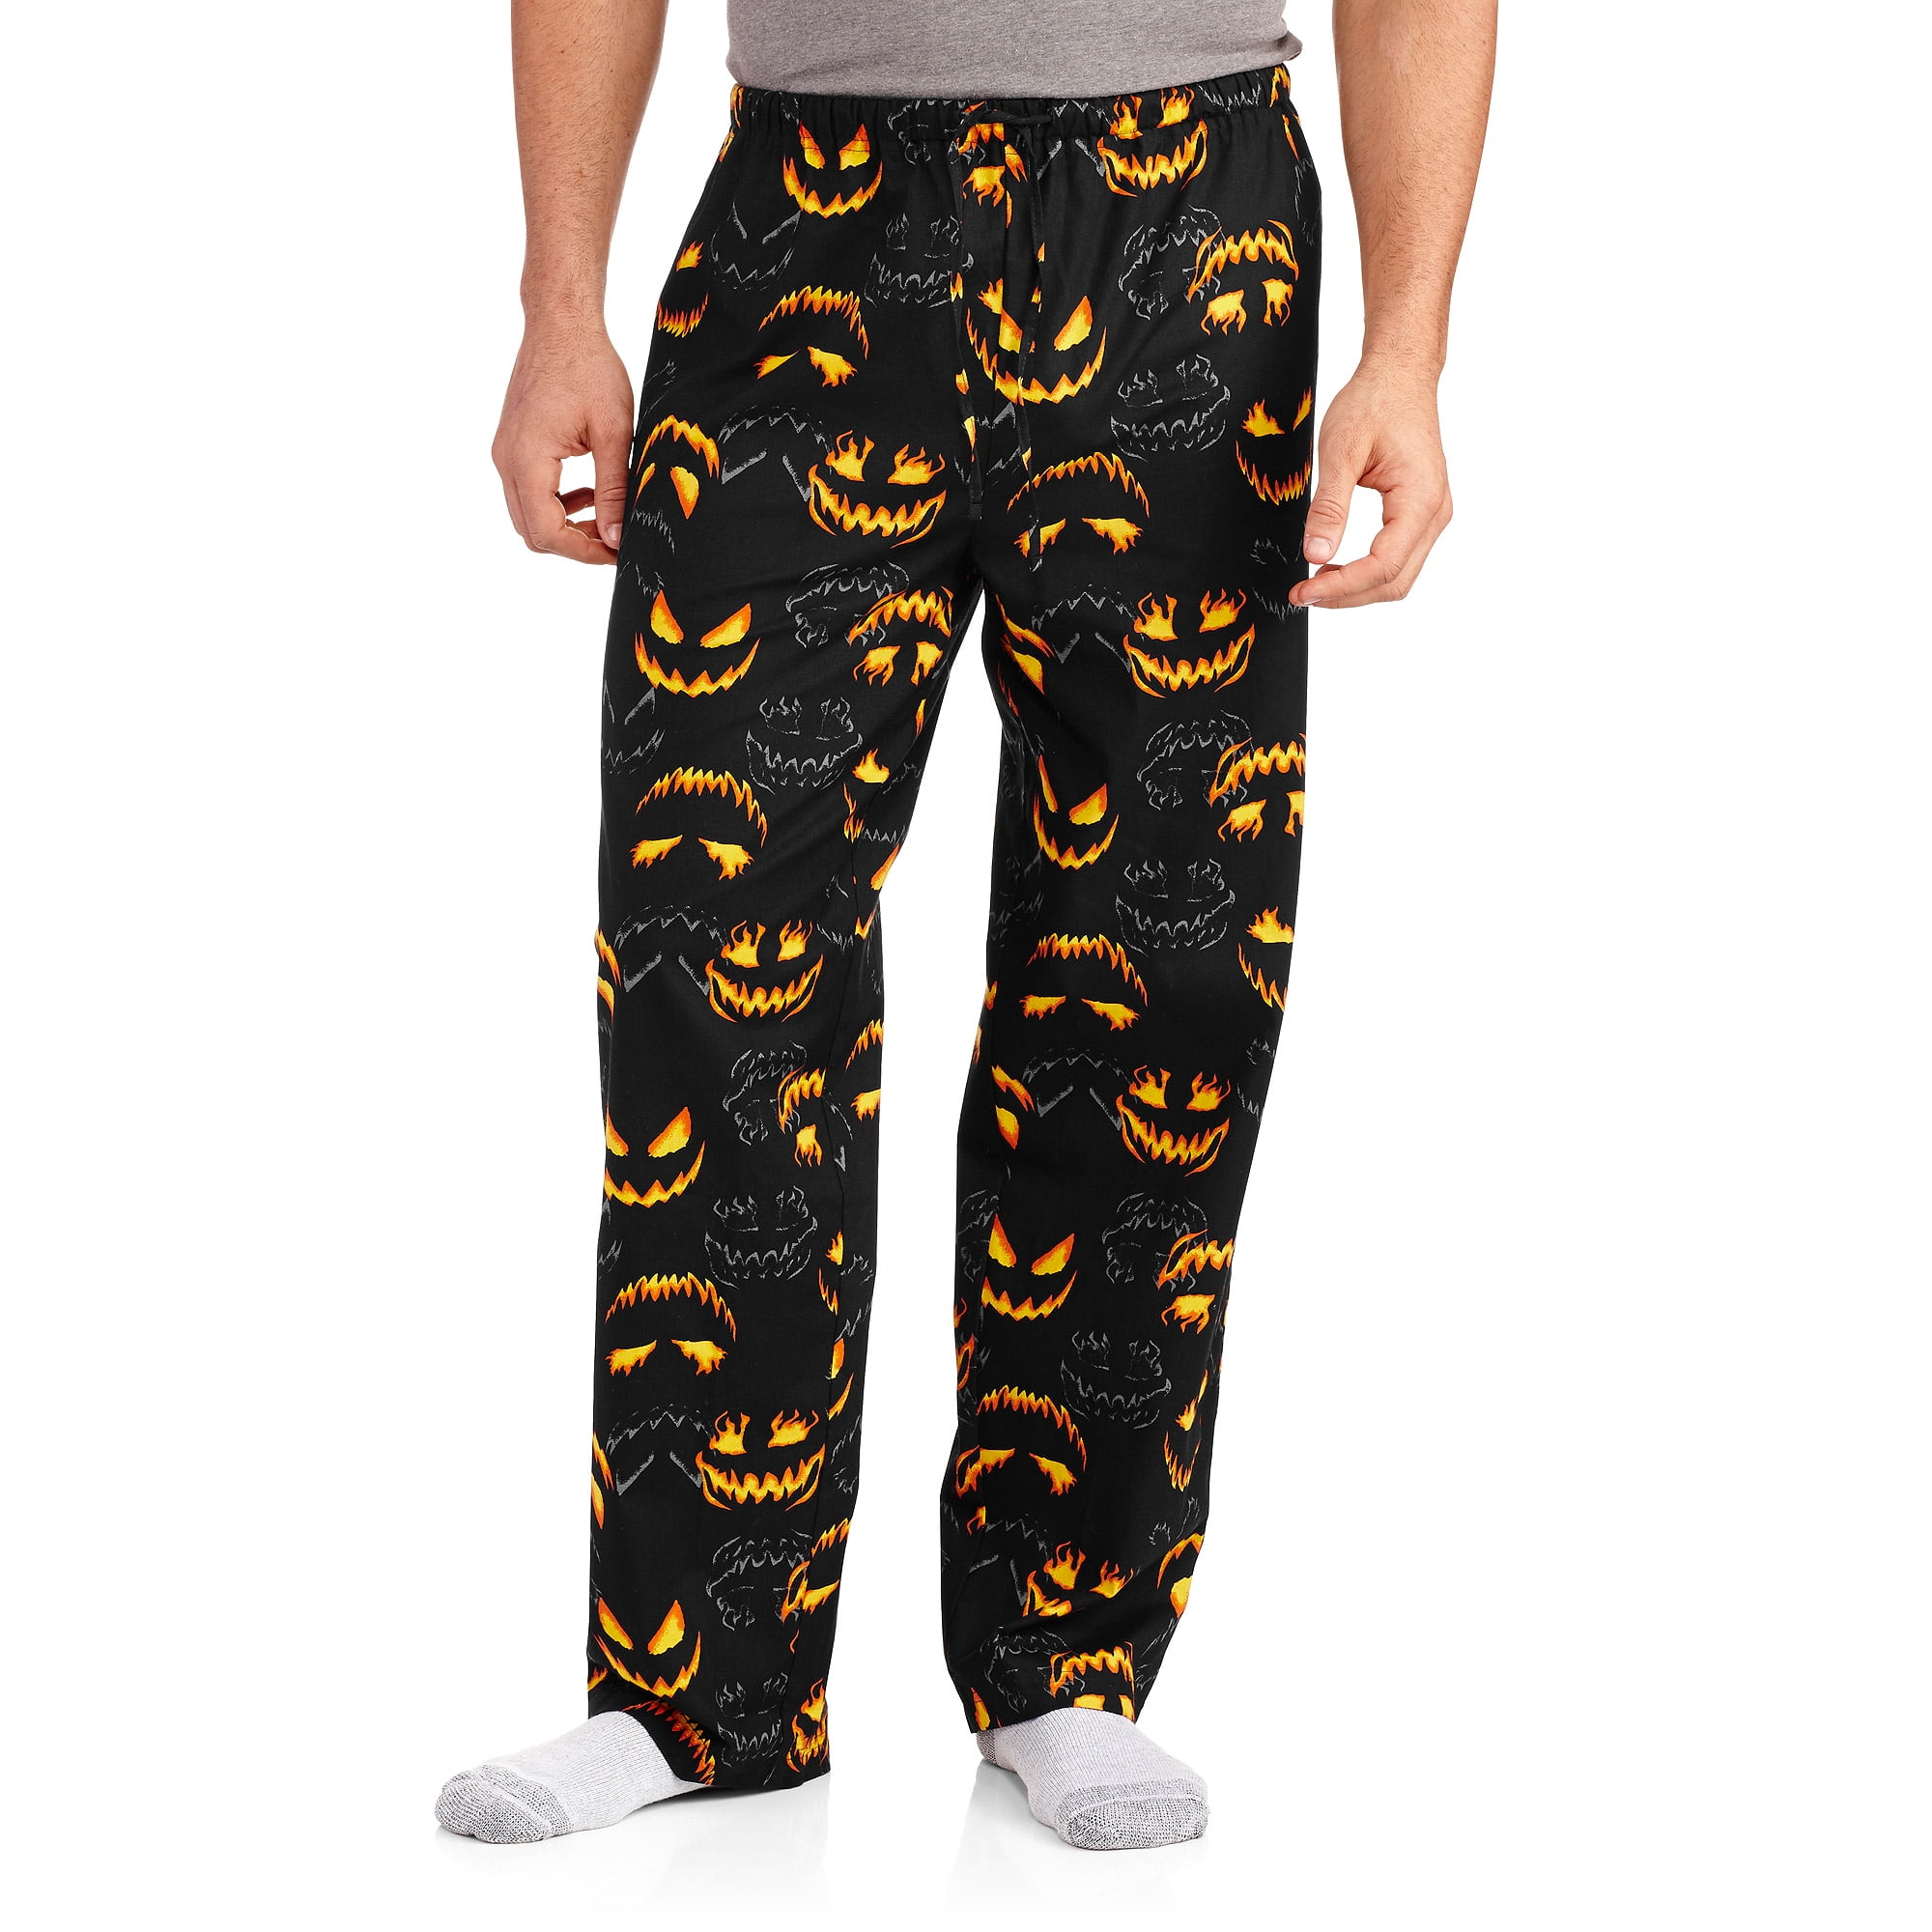 Men's Halloween Sleep Pants - Walmart.com